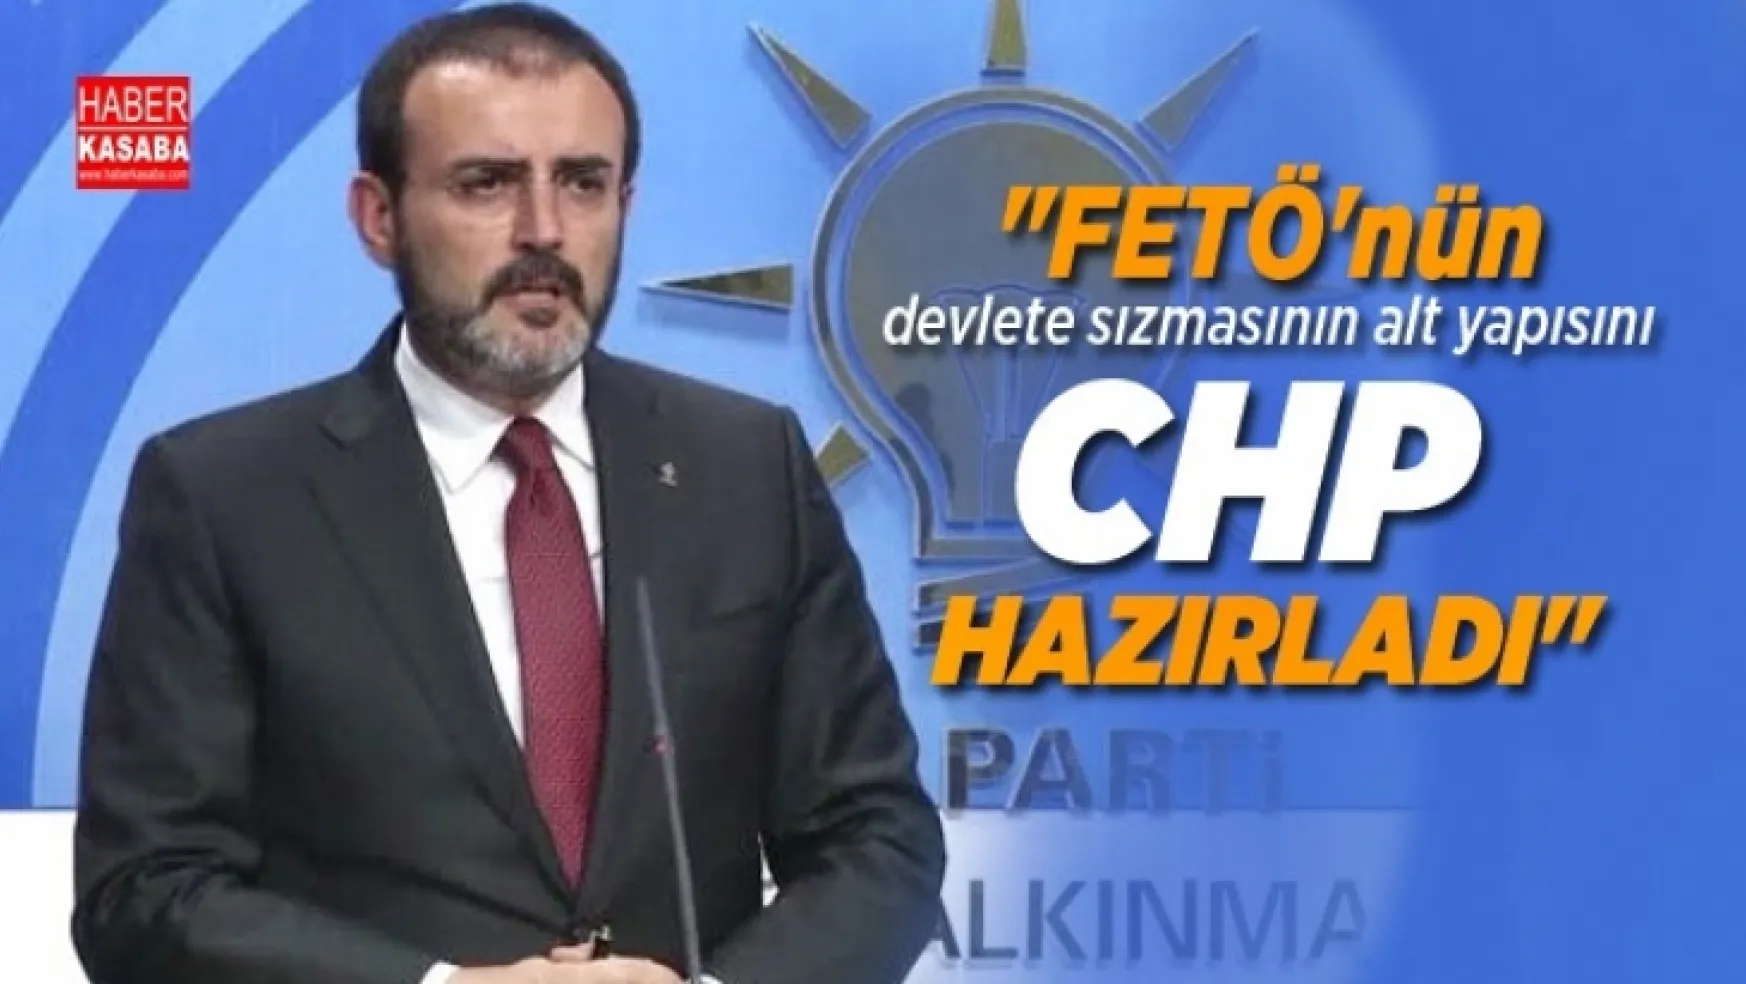 AKP Sözcüsü Mahir Ünal 'FETÖ'nün devlete sızmasının alt yapısını CHP hazırladı'